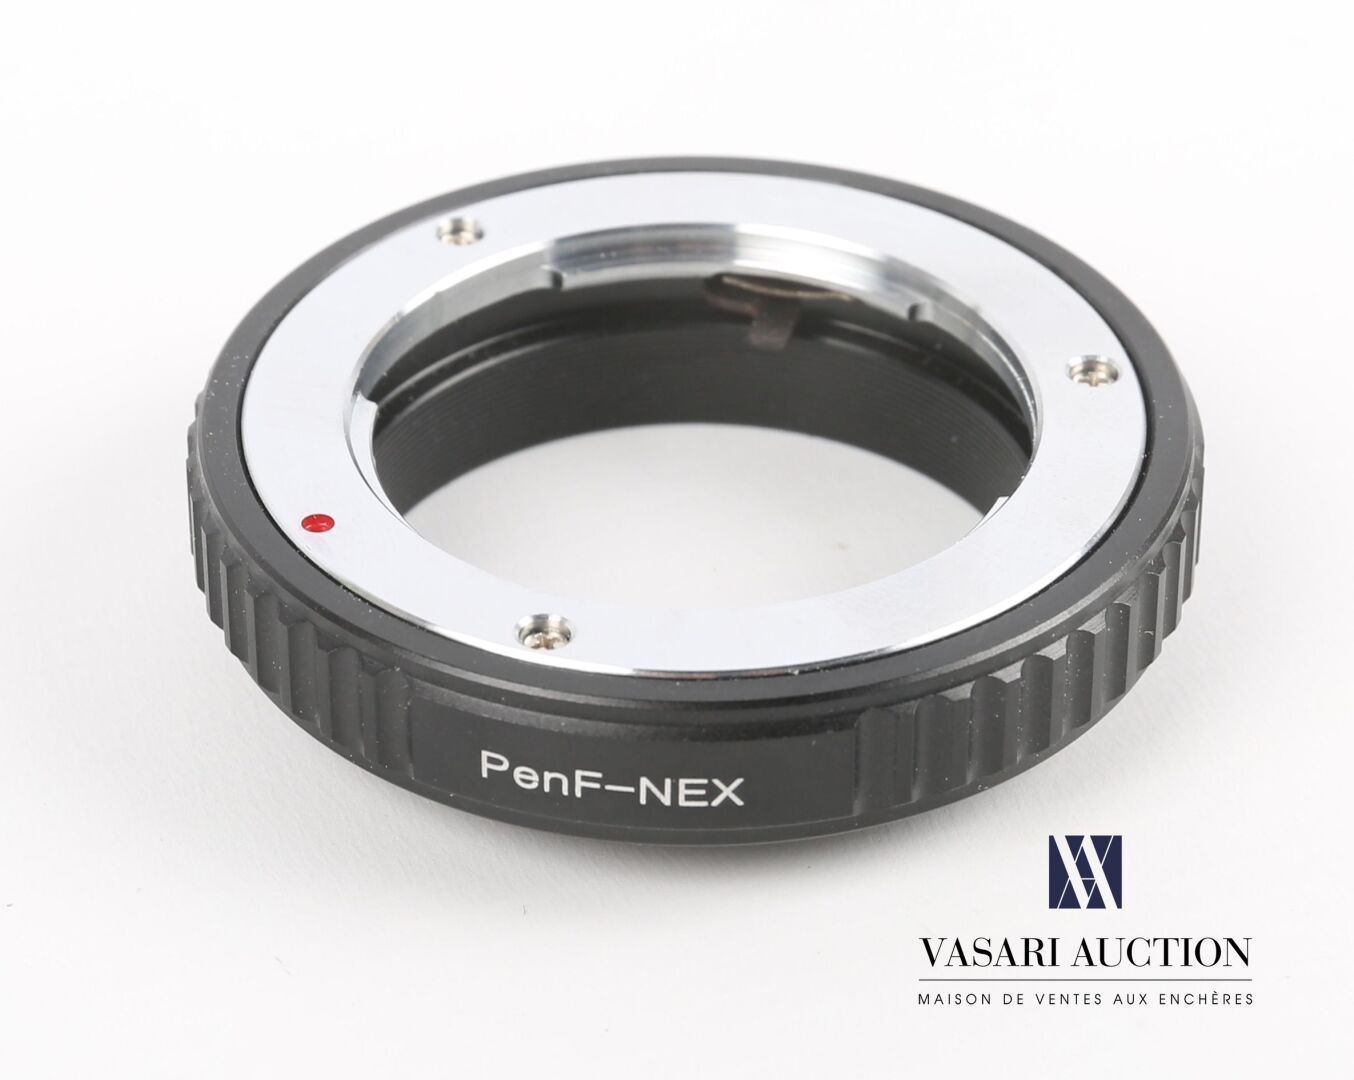 Null 地段包括 :



PenF-NEX光学环

(条件非常好)

地段包括 :尼康EH电源适配器，尼康HB-11防风罩和尼康HN-1型旋入式镜头罩。

&hellip;